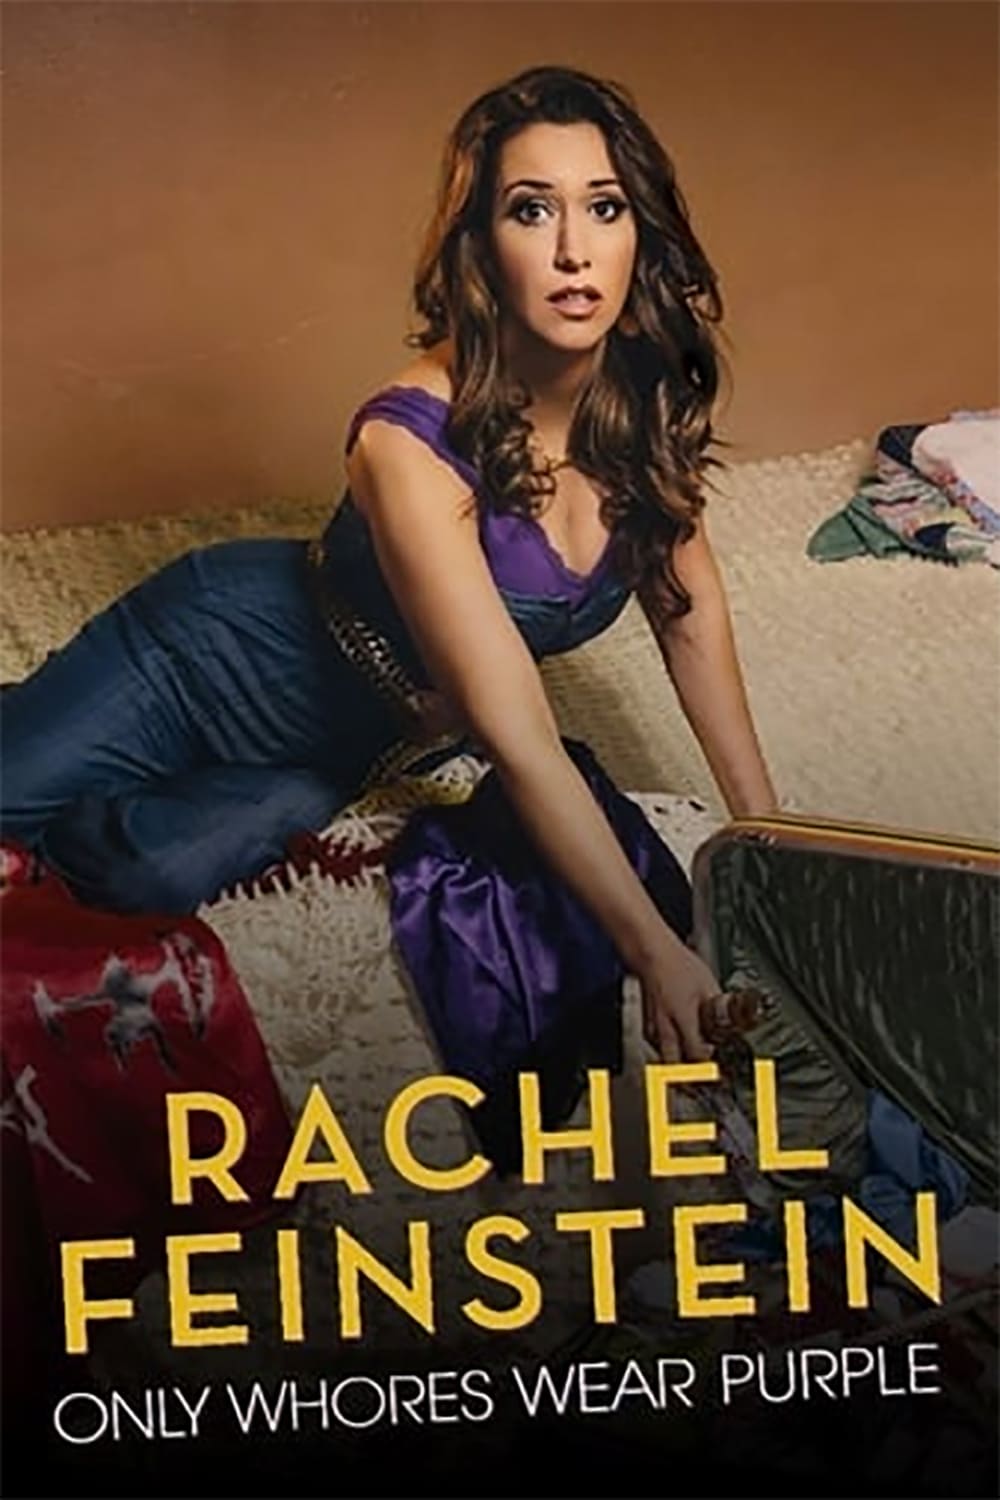 Amy Schumer Presents Rachel Feinstein Only Whores Wear Purple